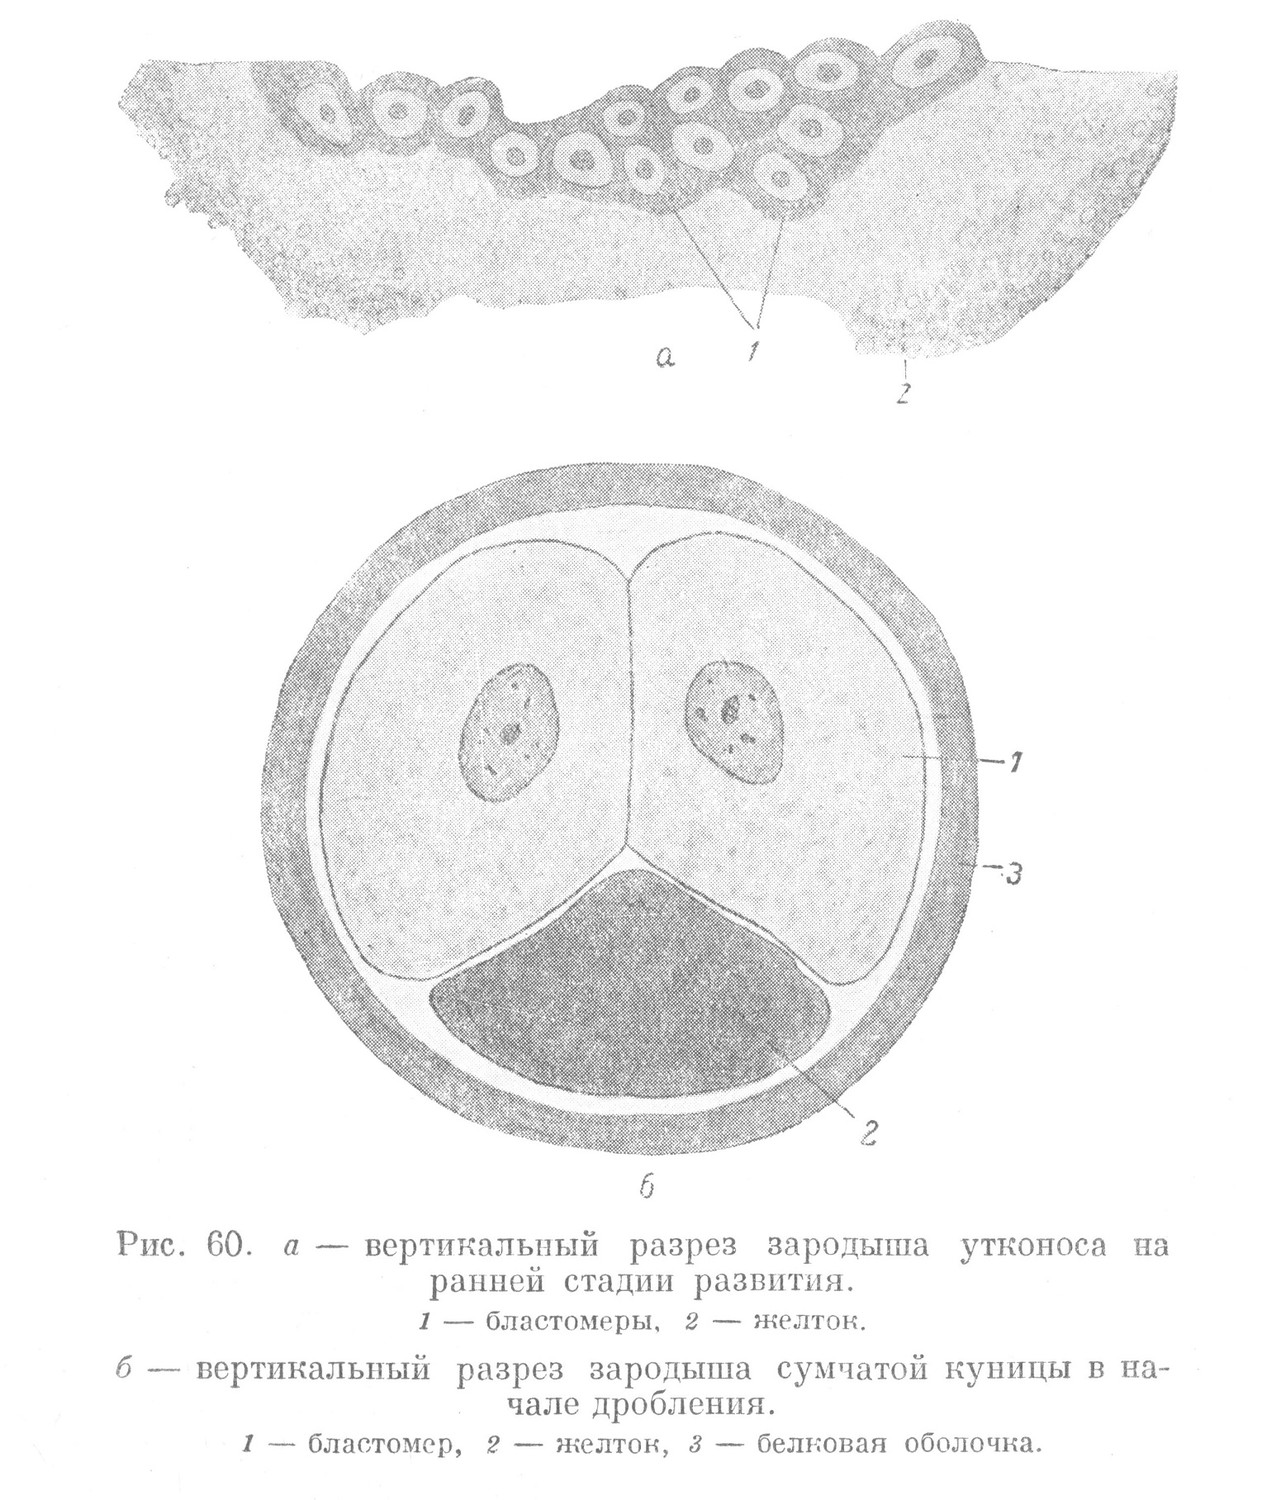 вертикальный разрез зародыша утконоса на ранней стадии развития.